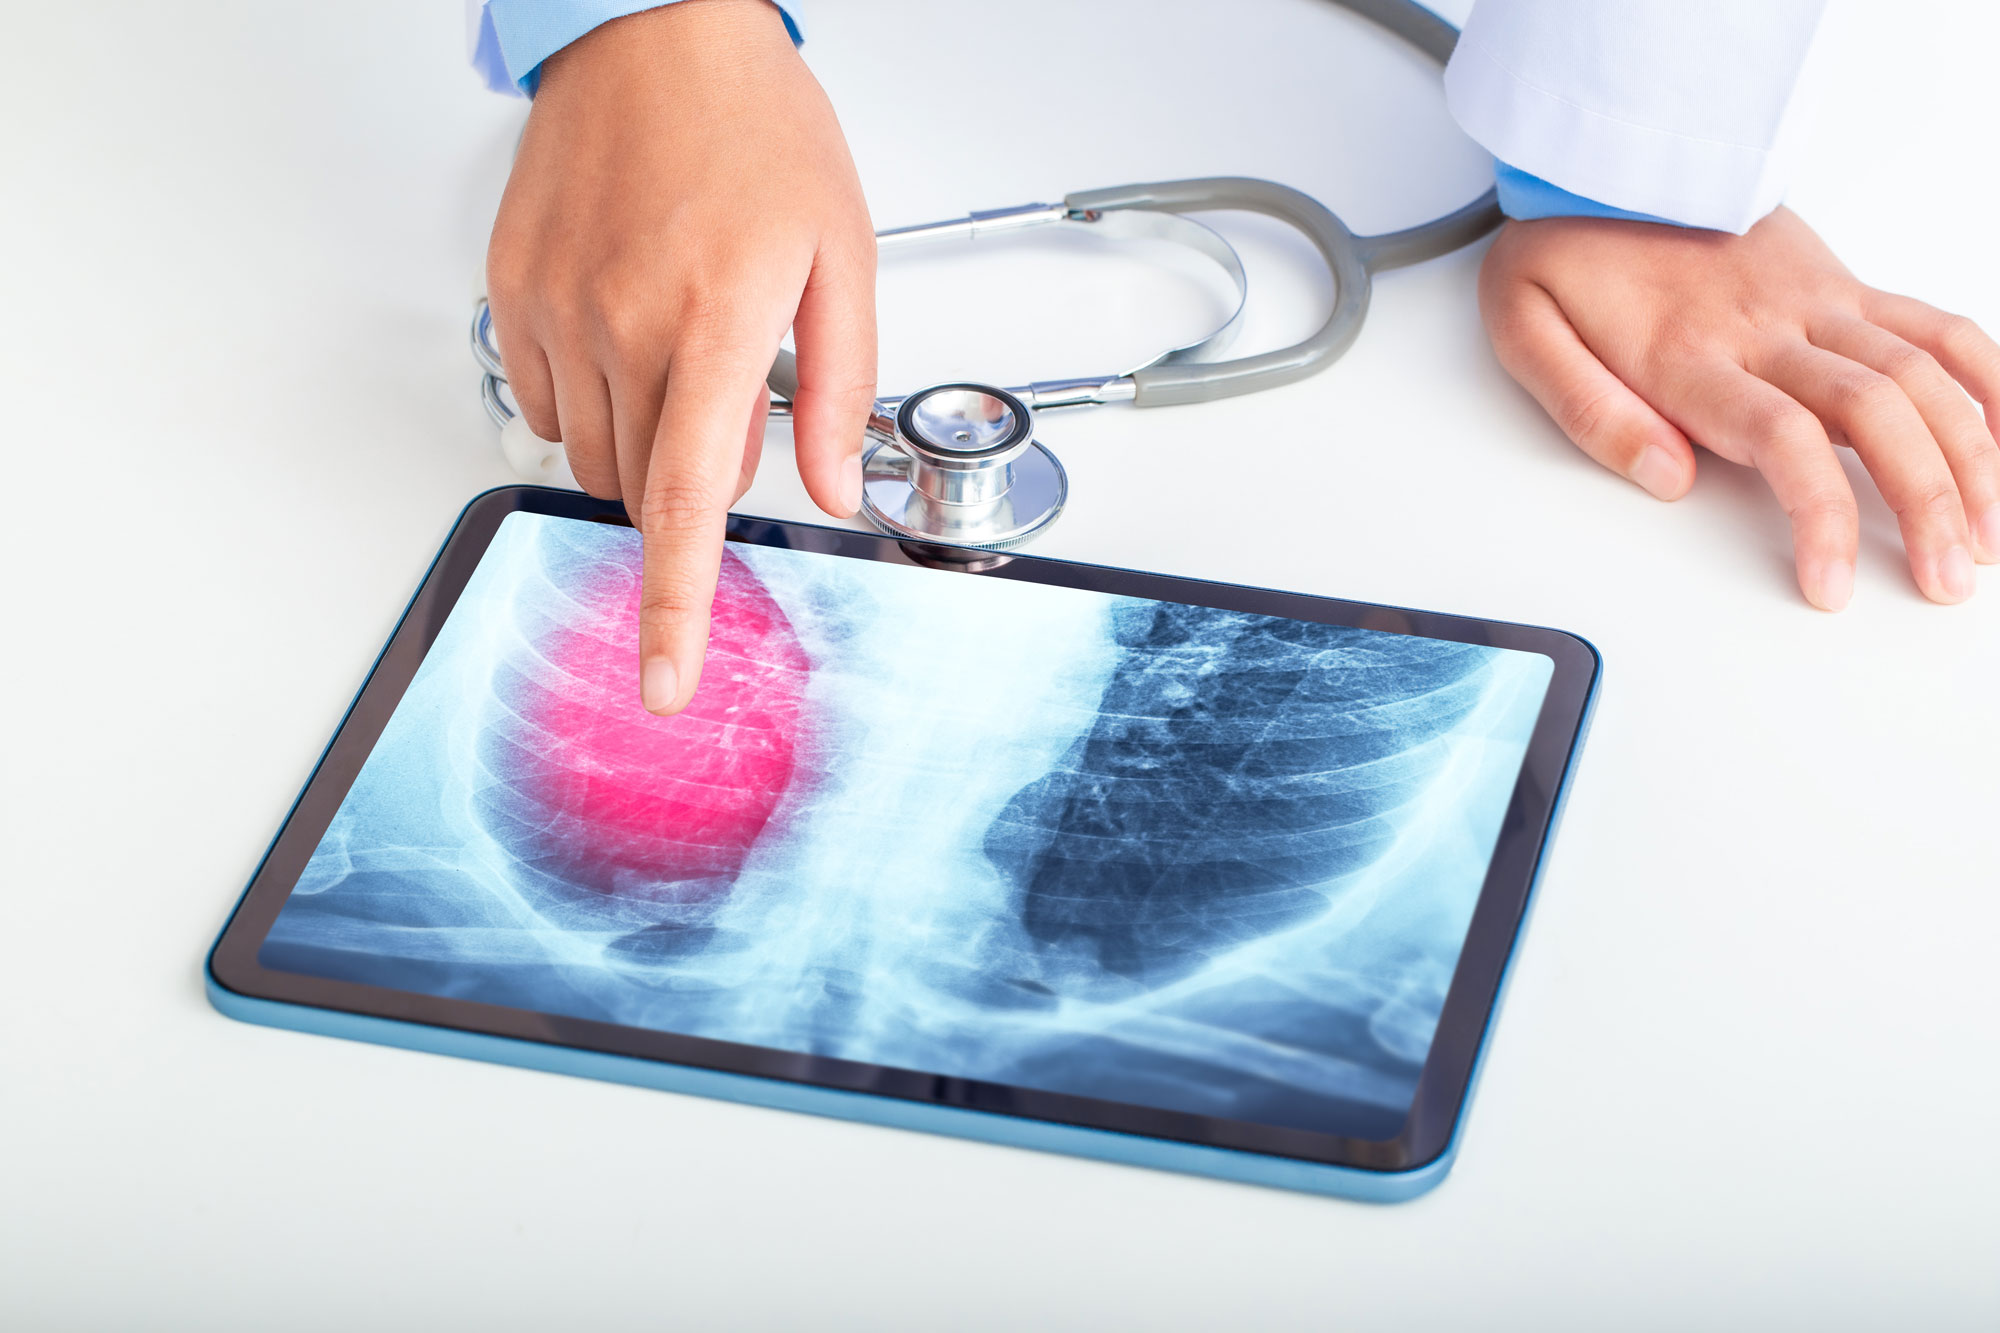 Arzt oder Wissenschaftler zeigt dem Patienten auf dem Tablet-Bildschirm die Ergebnisse der Lungenuntersuchung durch Röntgenaufnahmen der Brust. Lungenkrebs, Lungenentzündung, Lungeninfektion. Bildquelle: Kt Stock.soch.adobe.com